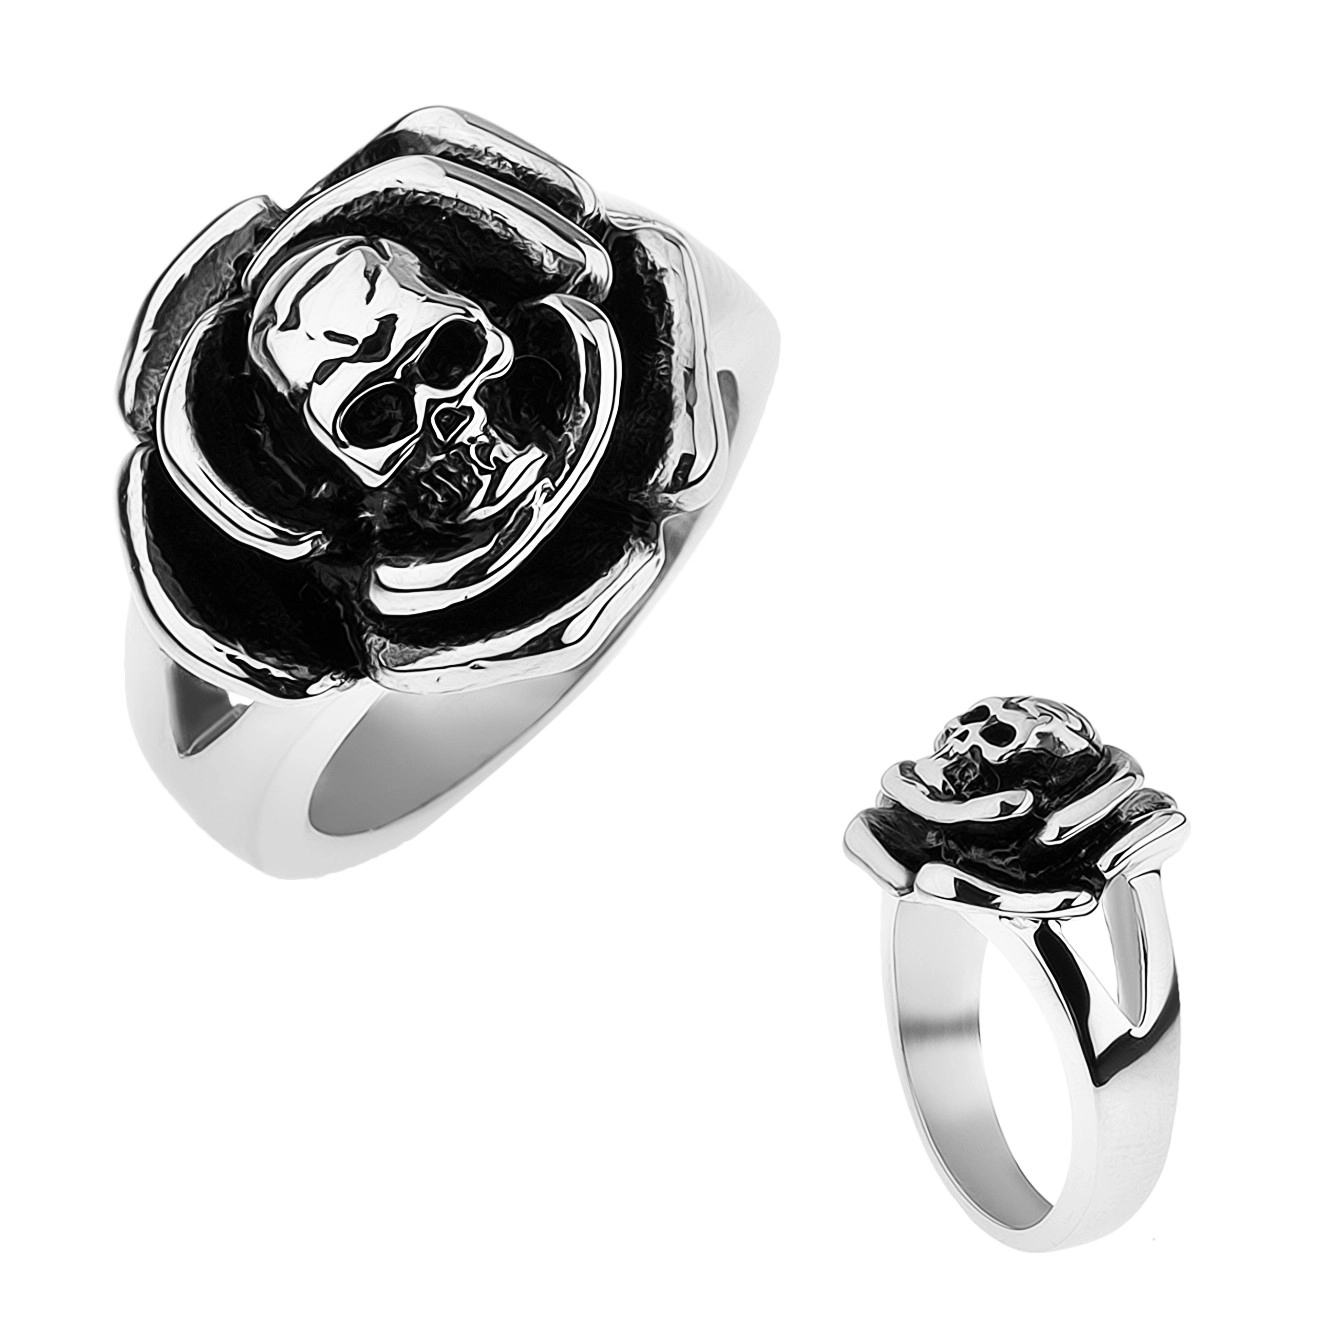 Patinovaný oceľový prsteň, ruža s lebkou v strede, rozdvojené ramená - Veľkosť: 68 mm